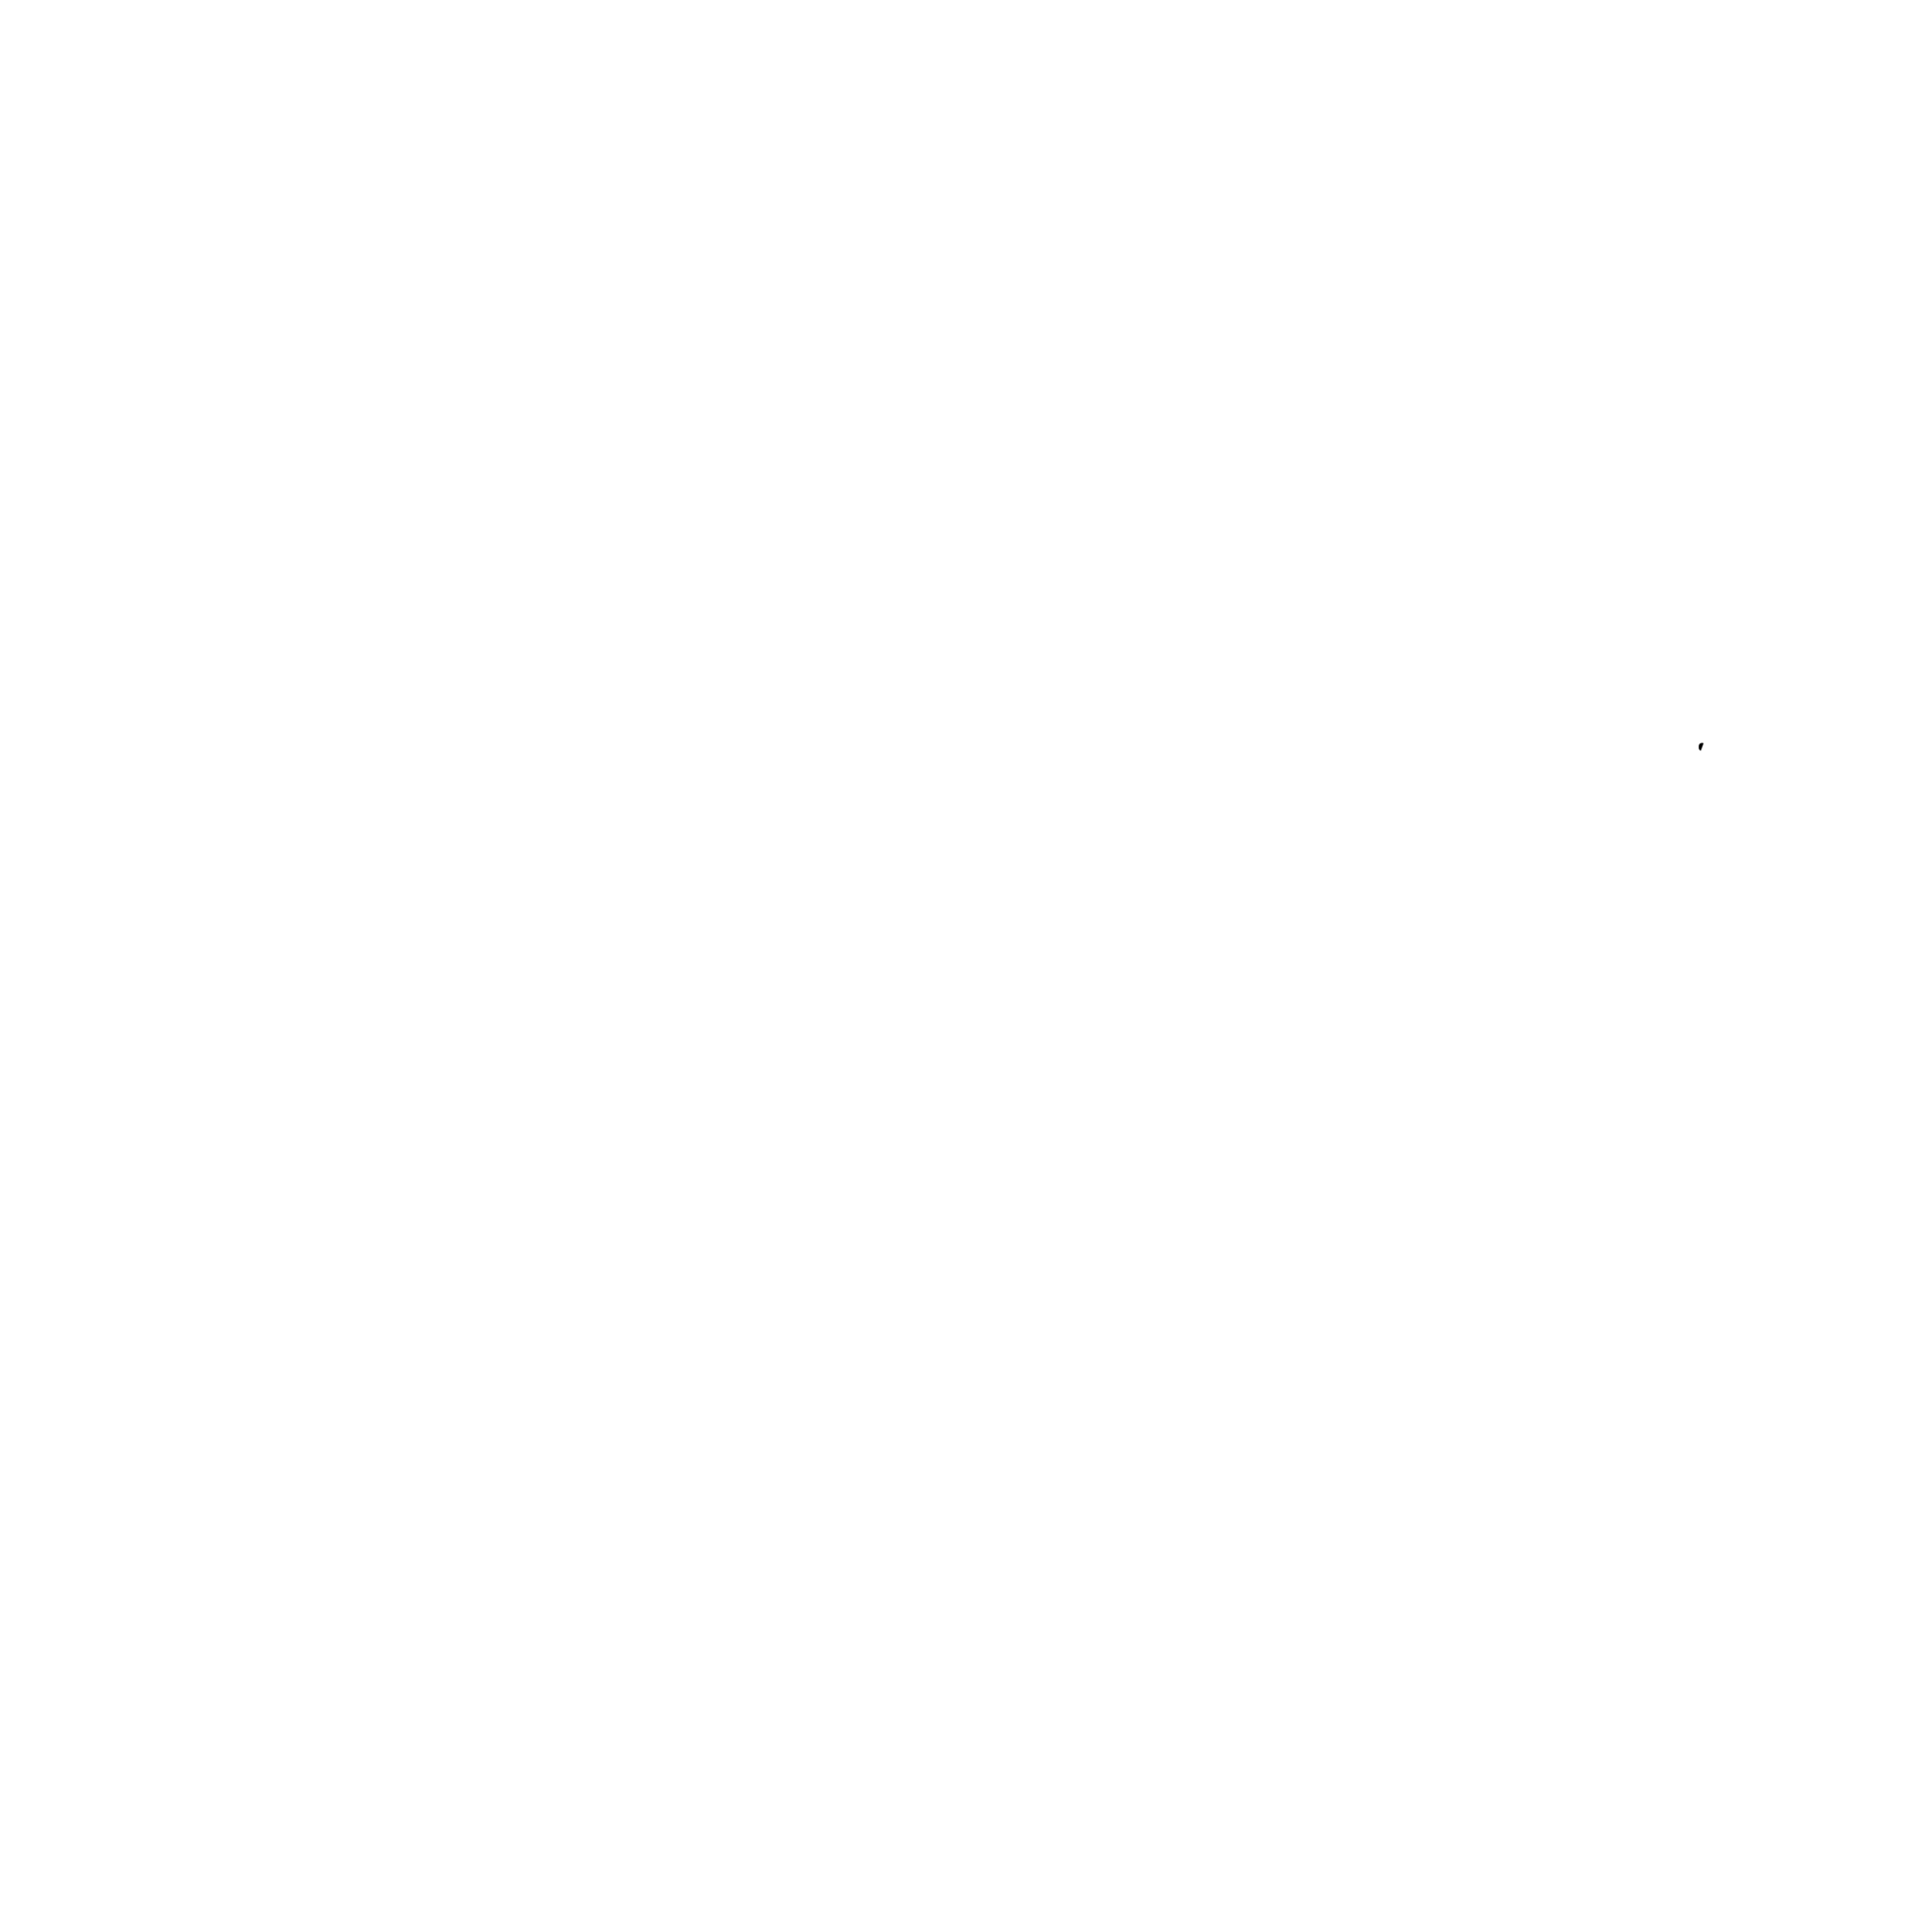 TSB-Racing Motosport